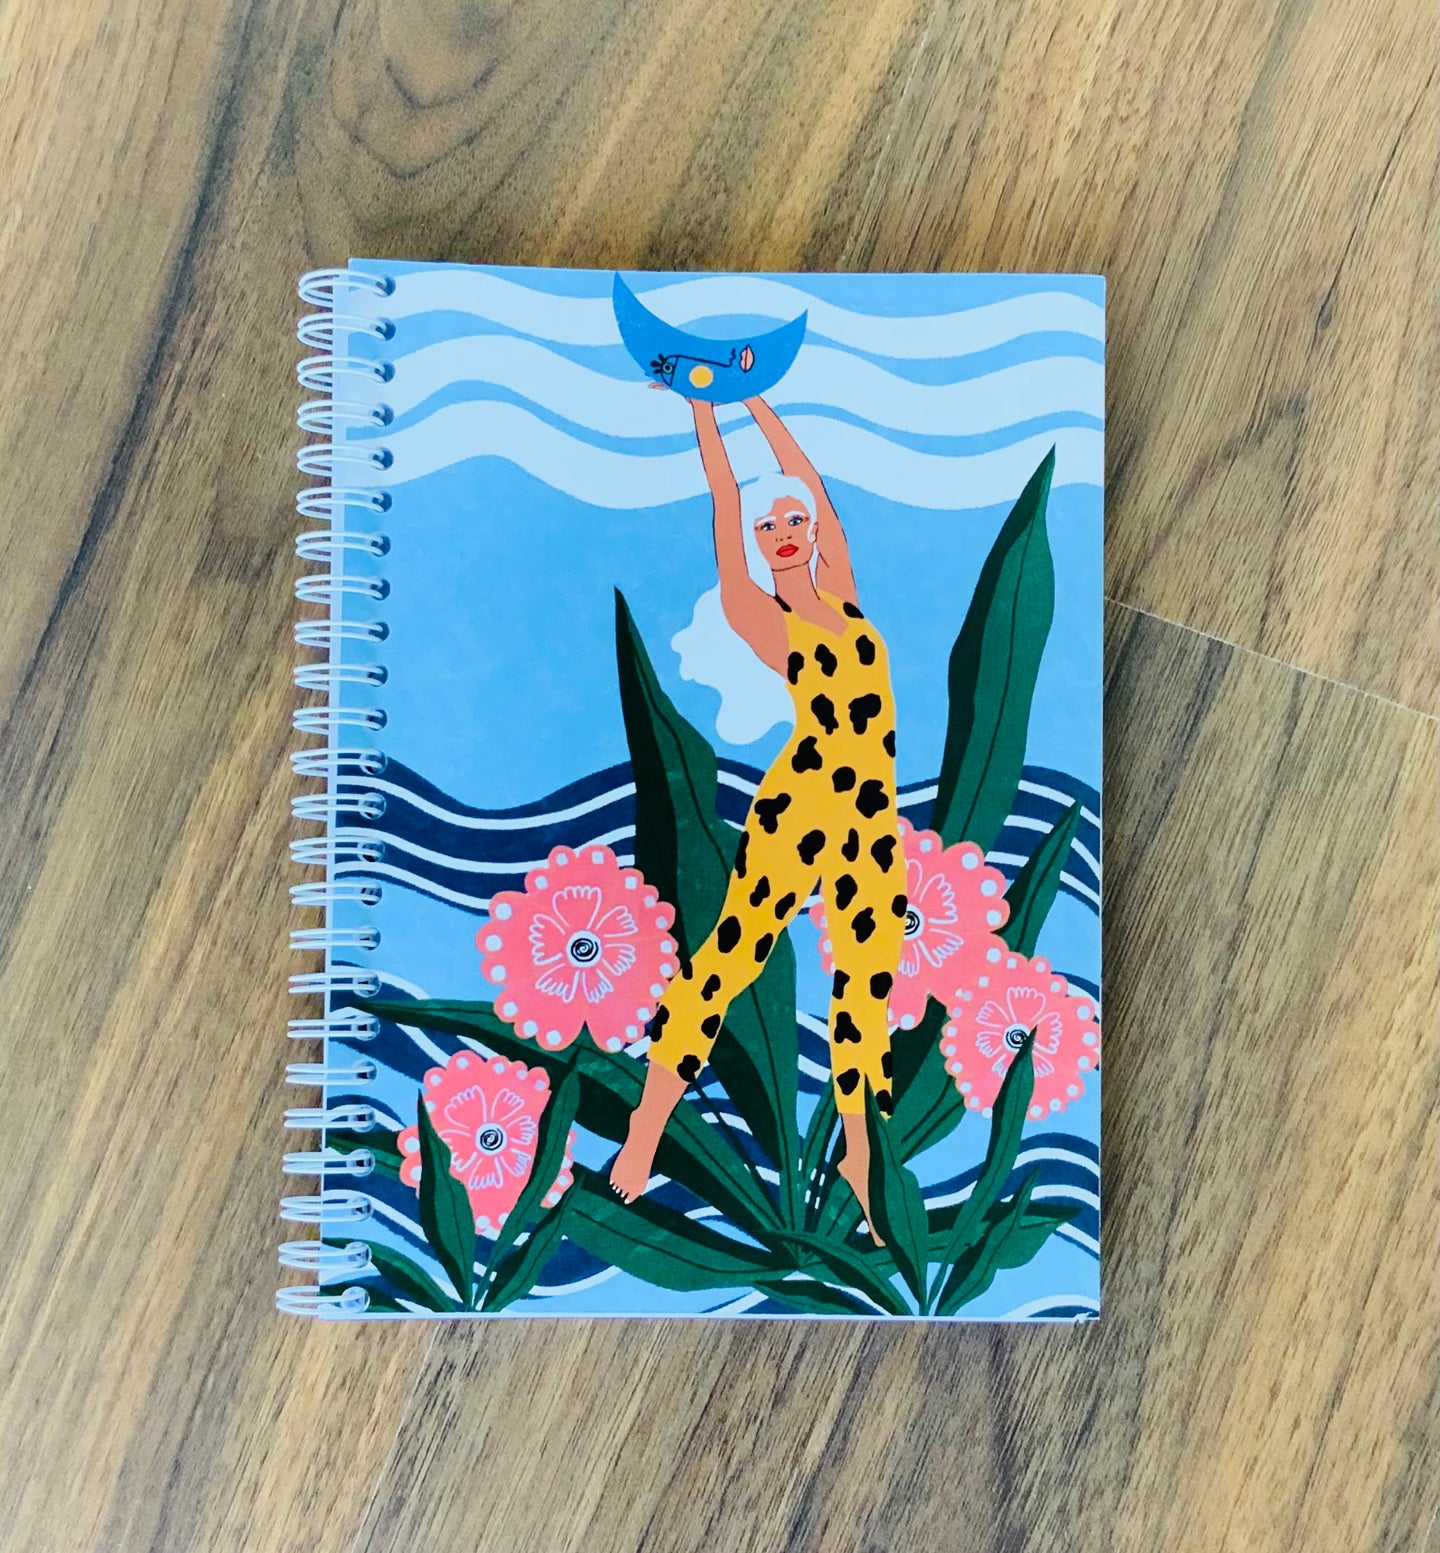 Empowered - Notebook